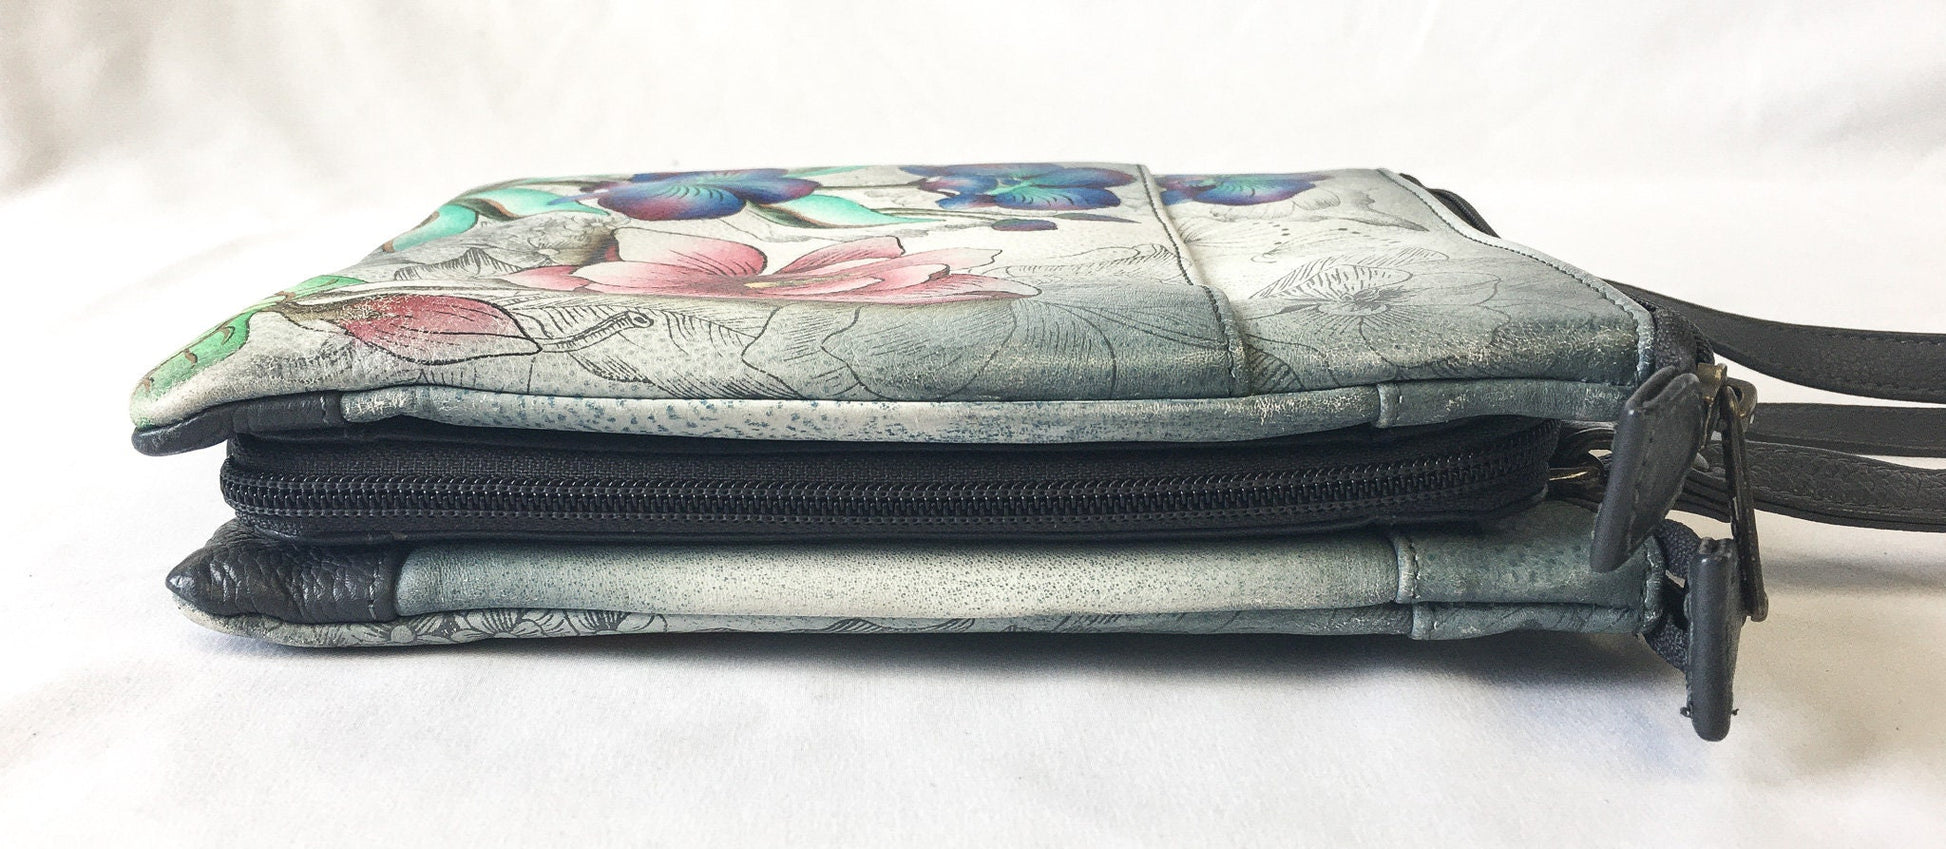 Vintage Anushcka Leather Hand Painted Multicolored Floral 3-Compartment Shoulder Bag, Vintage Anushcka Bag